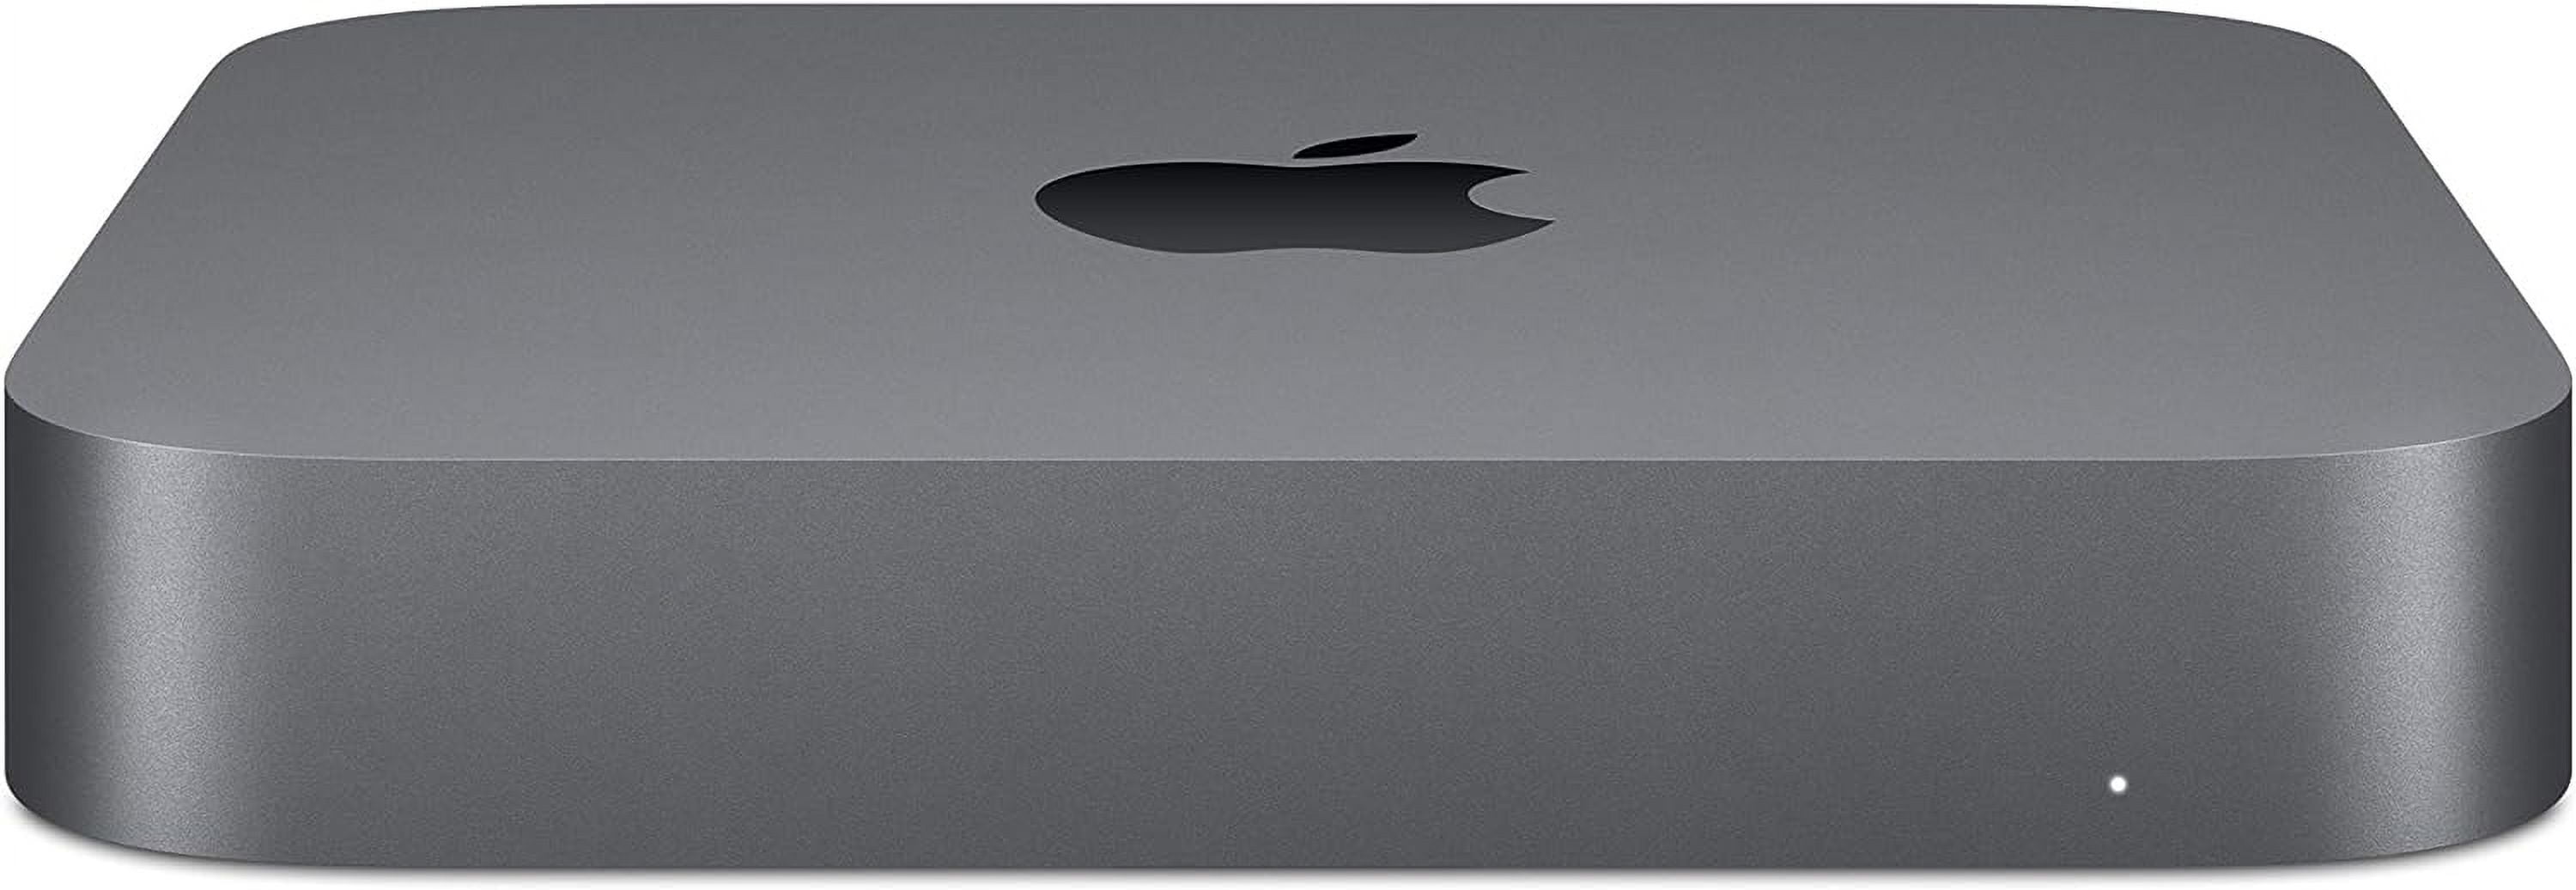 Apple Mac mini MXNG2LL/A Desktop Computer, Intel Core i5 8th Gen 3 GHz, 8  GB RAM DDR4 SDRAM, 512 GB SSD, Mini PC, Space Gray